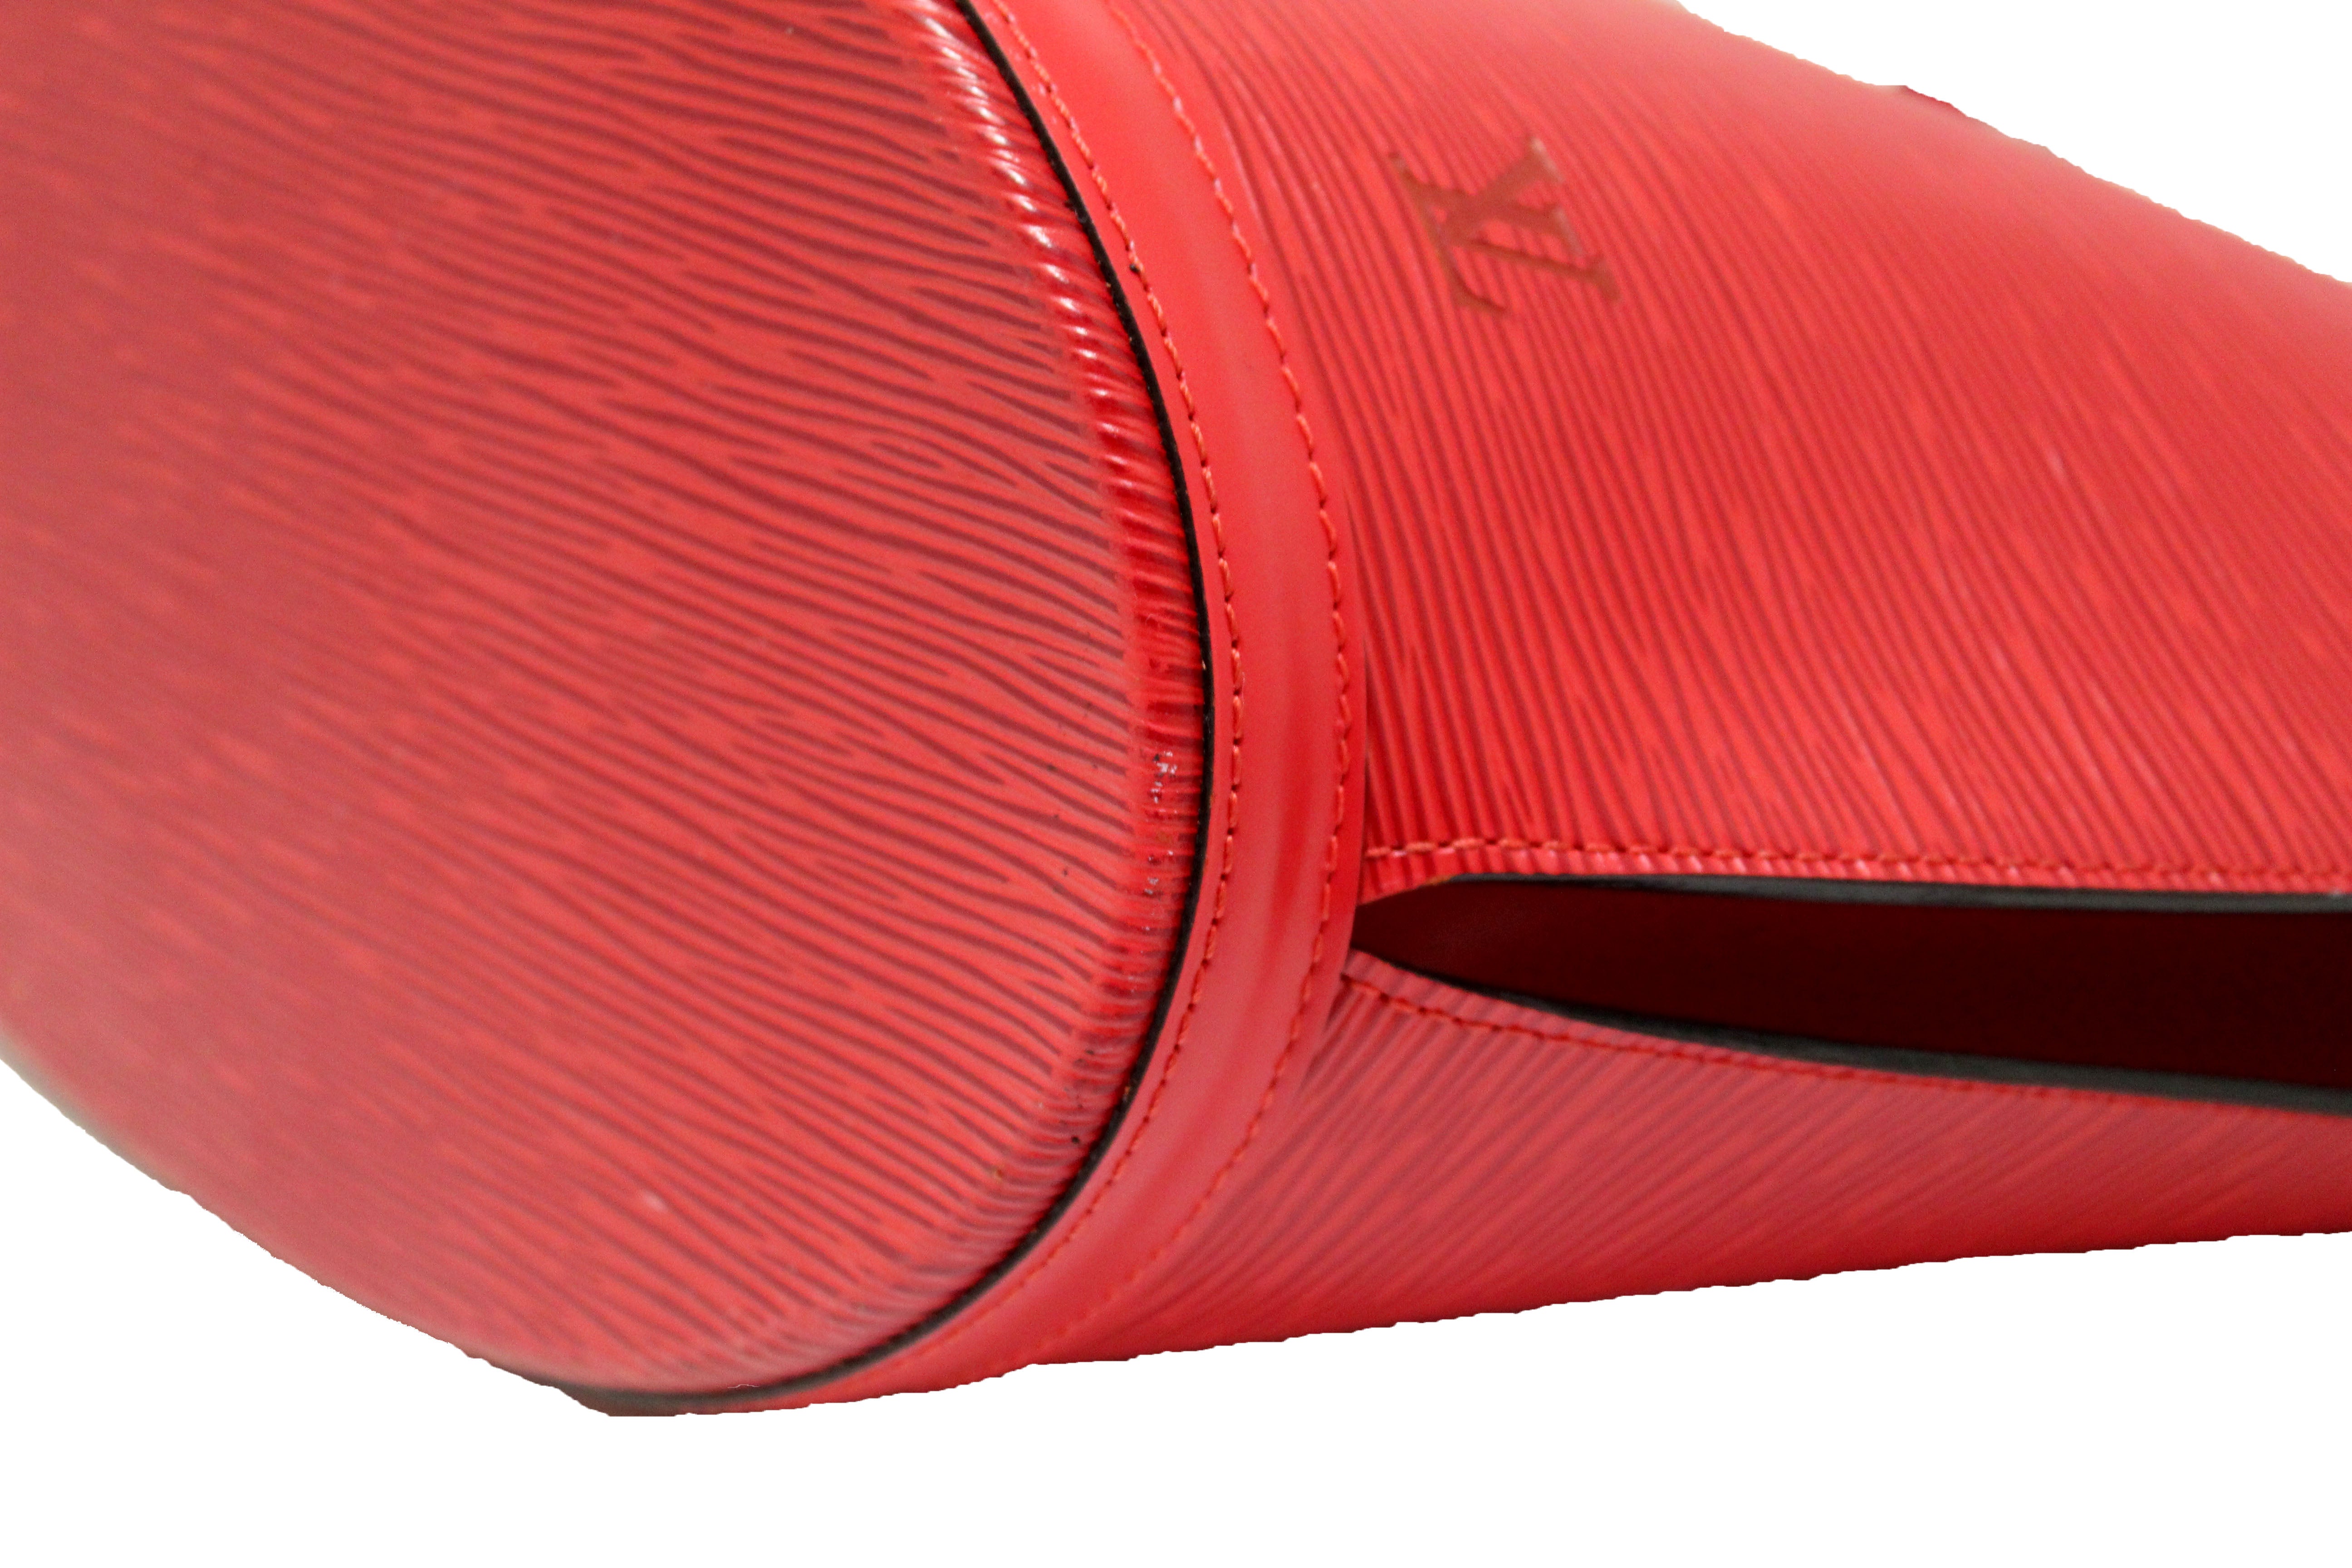 Authentic Louis Vuitton Red Epi Leather St Jacques GM Shoulder Bag